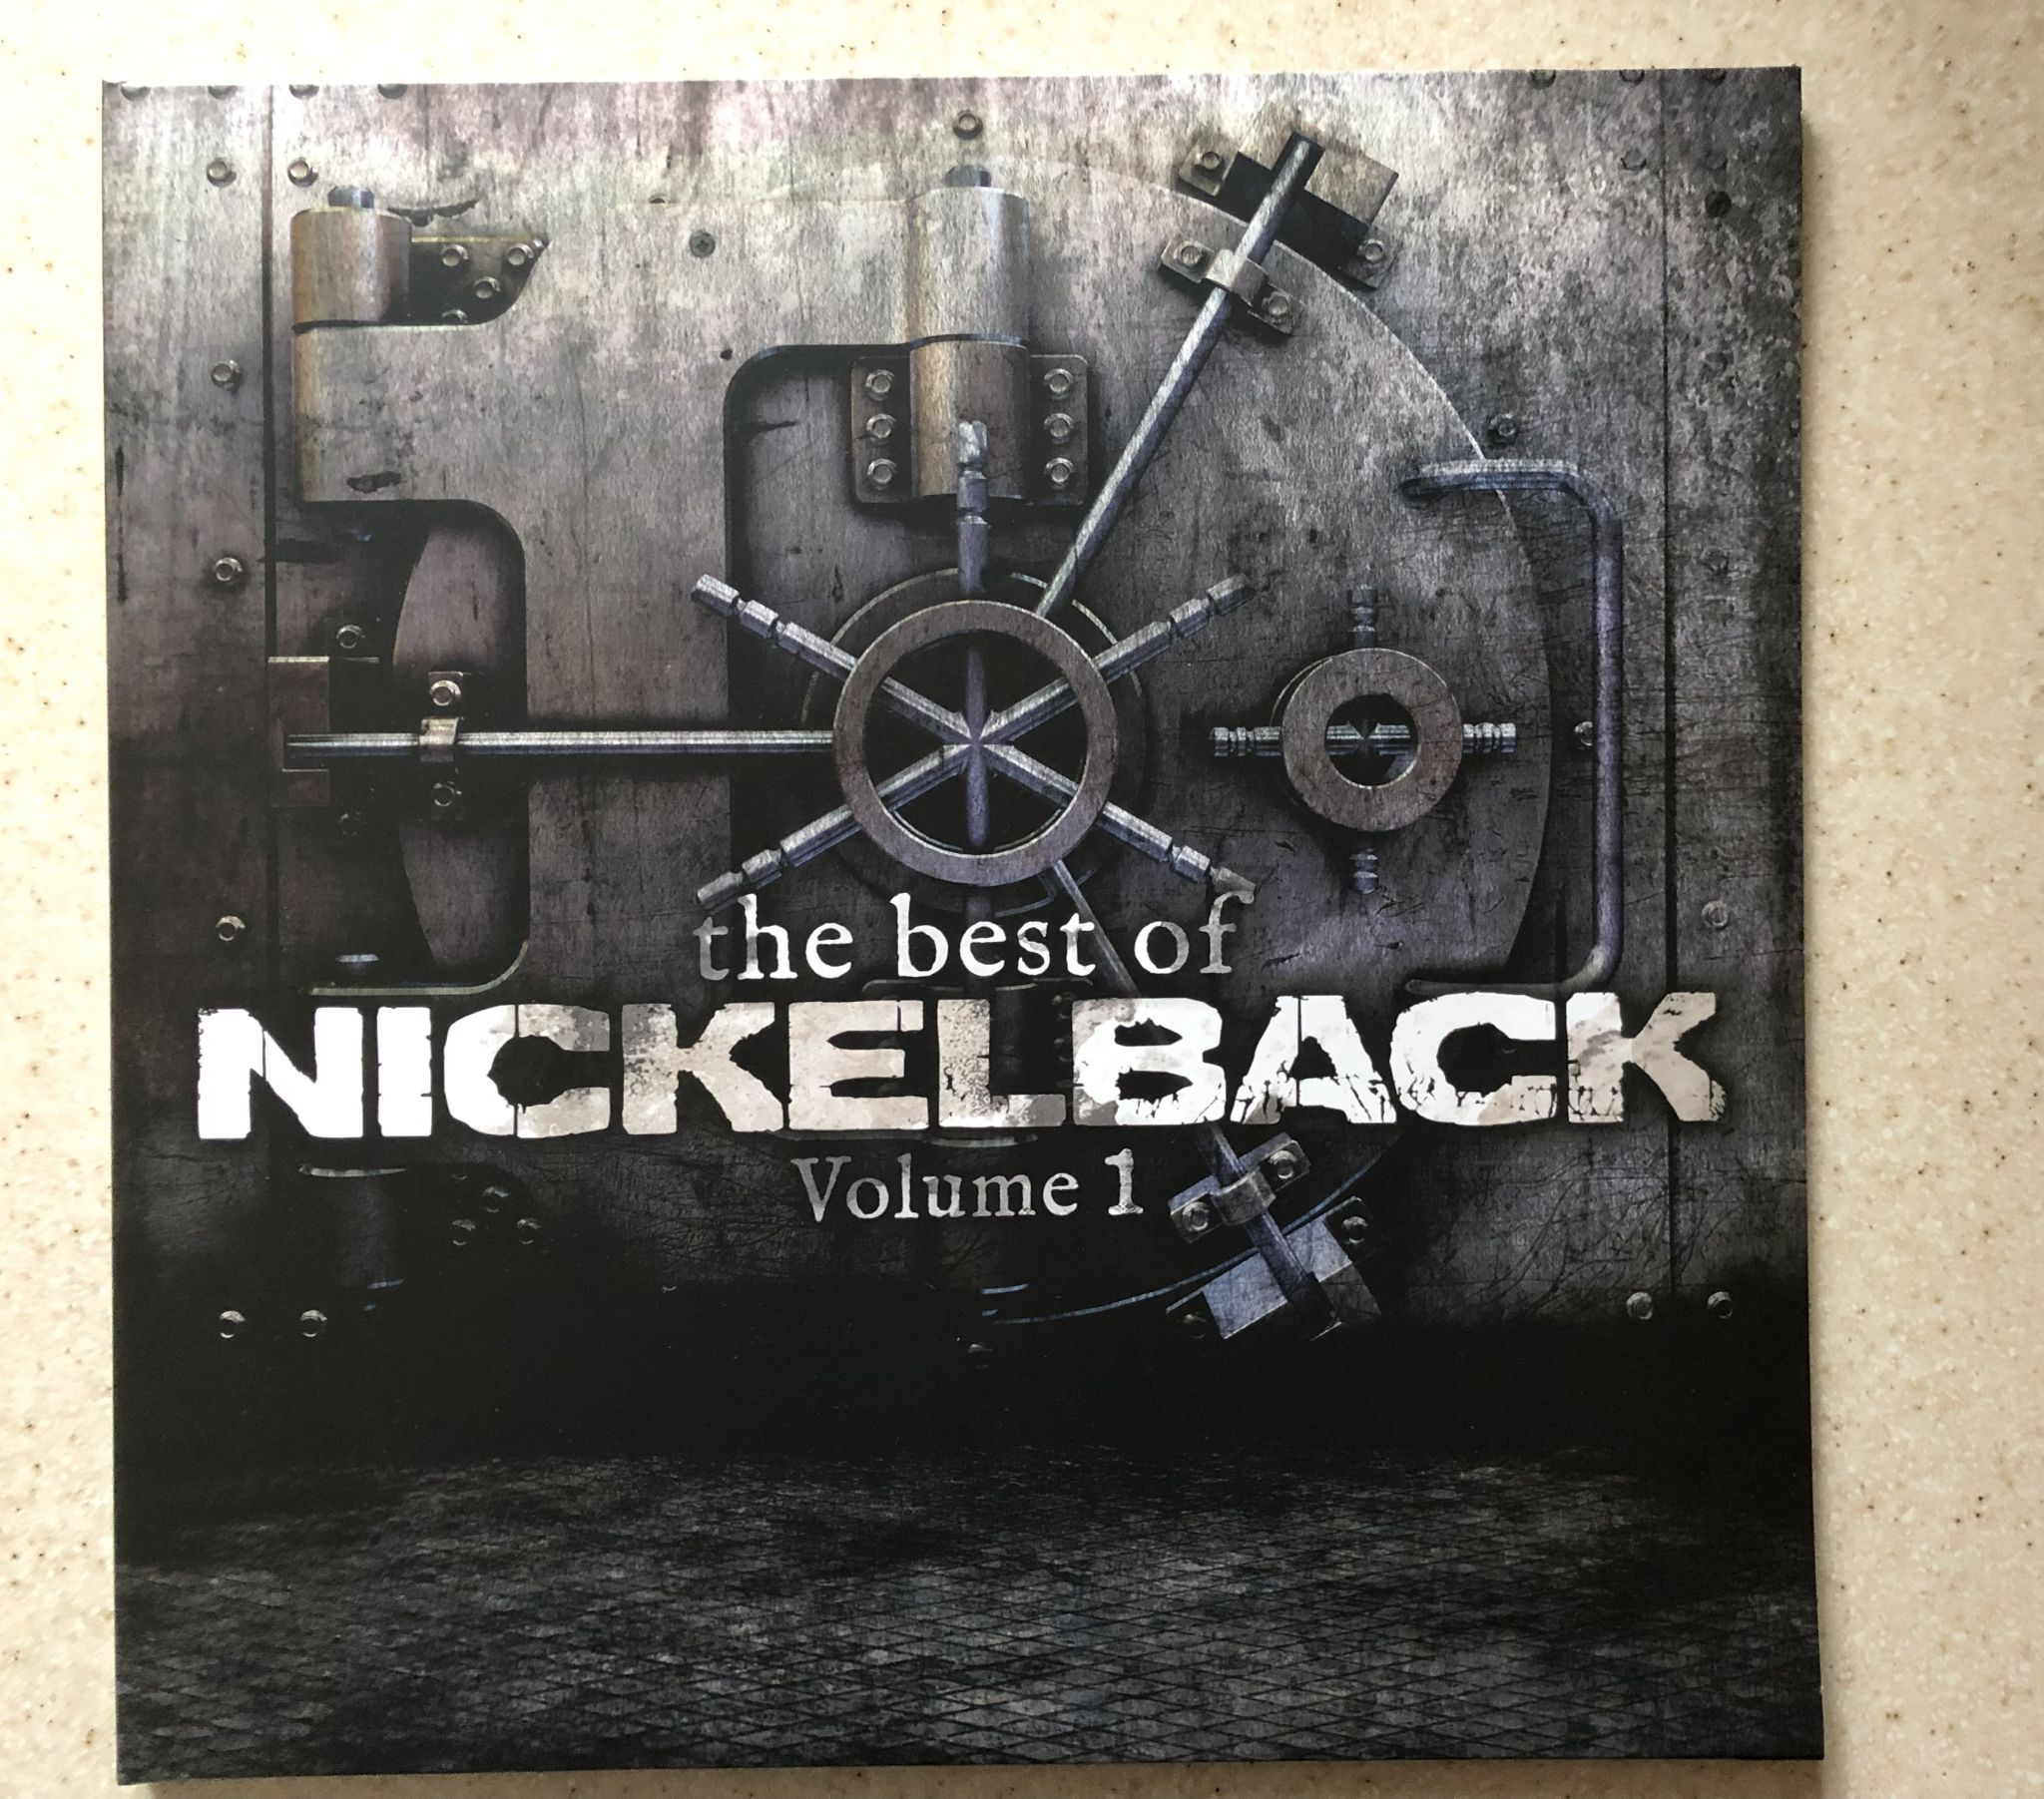 Nickelback альбомы. Nickelback логотип альбомов. Nickelback the best of Nickelback Volume 1. Nickelback обложка. Группа Nickelback альбомы.